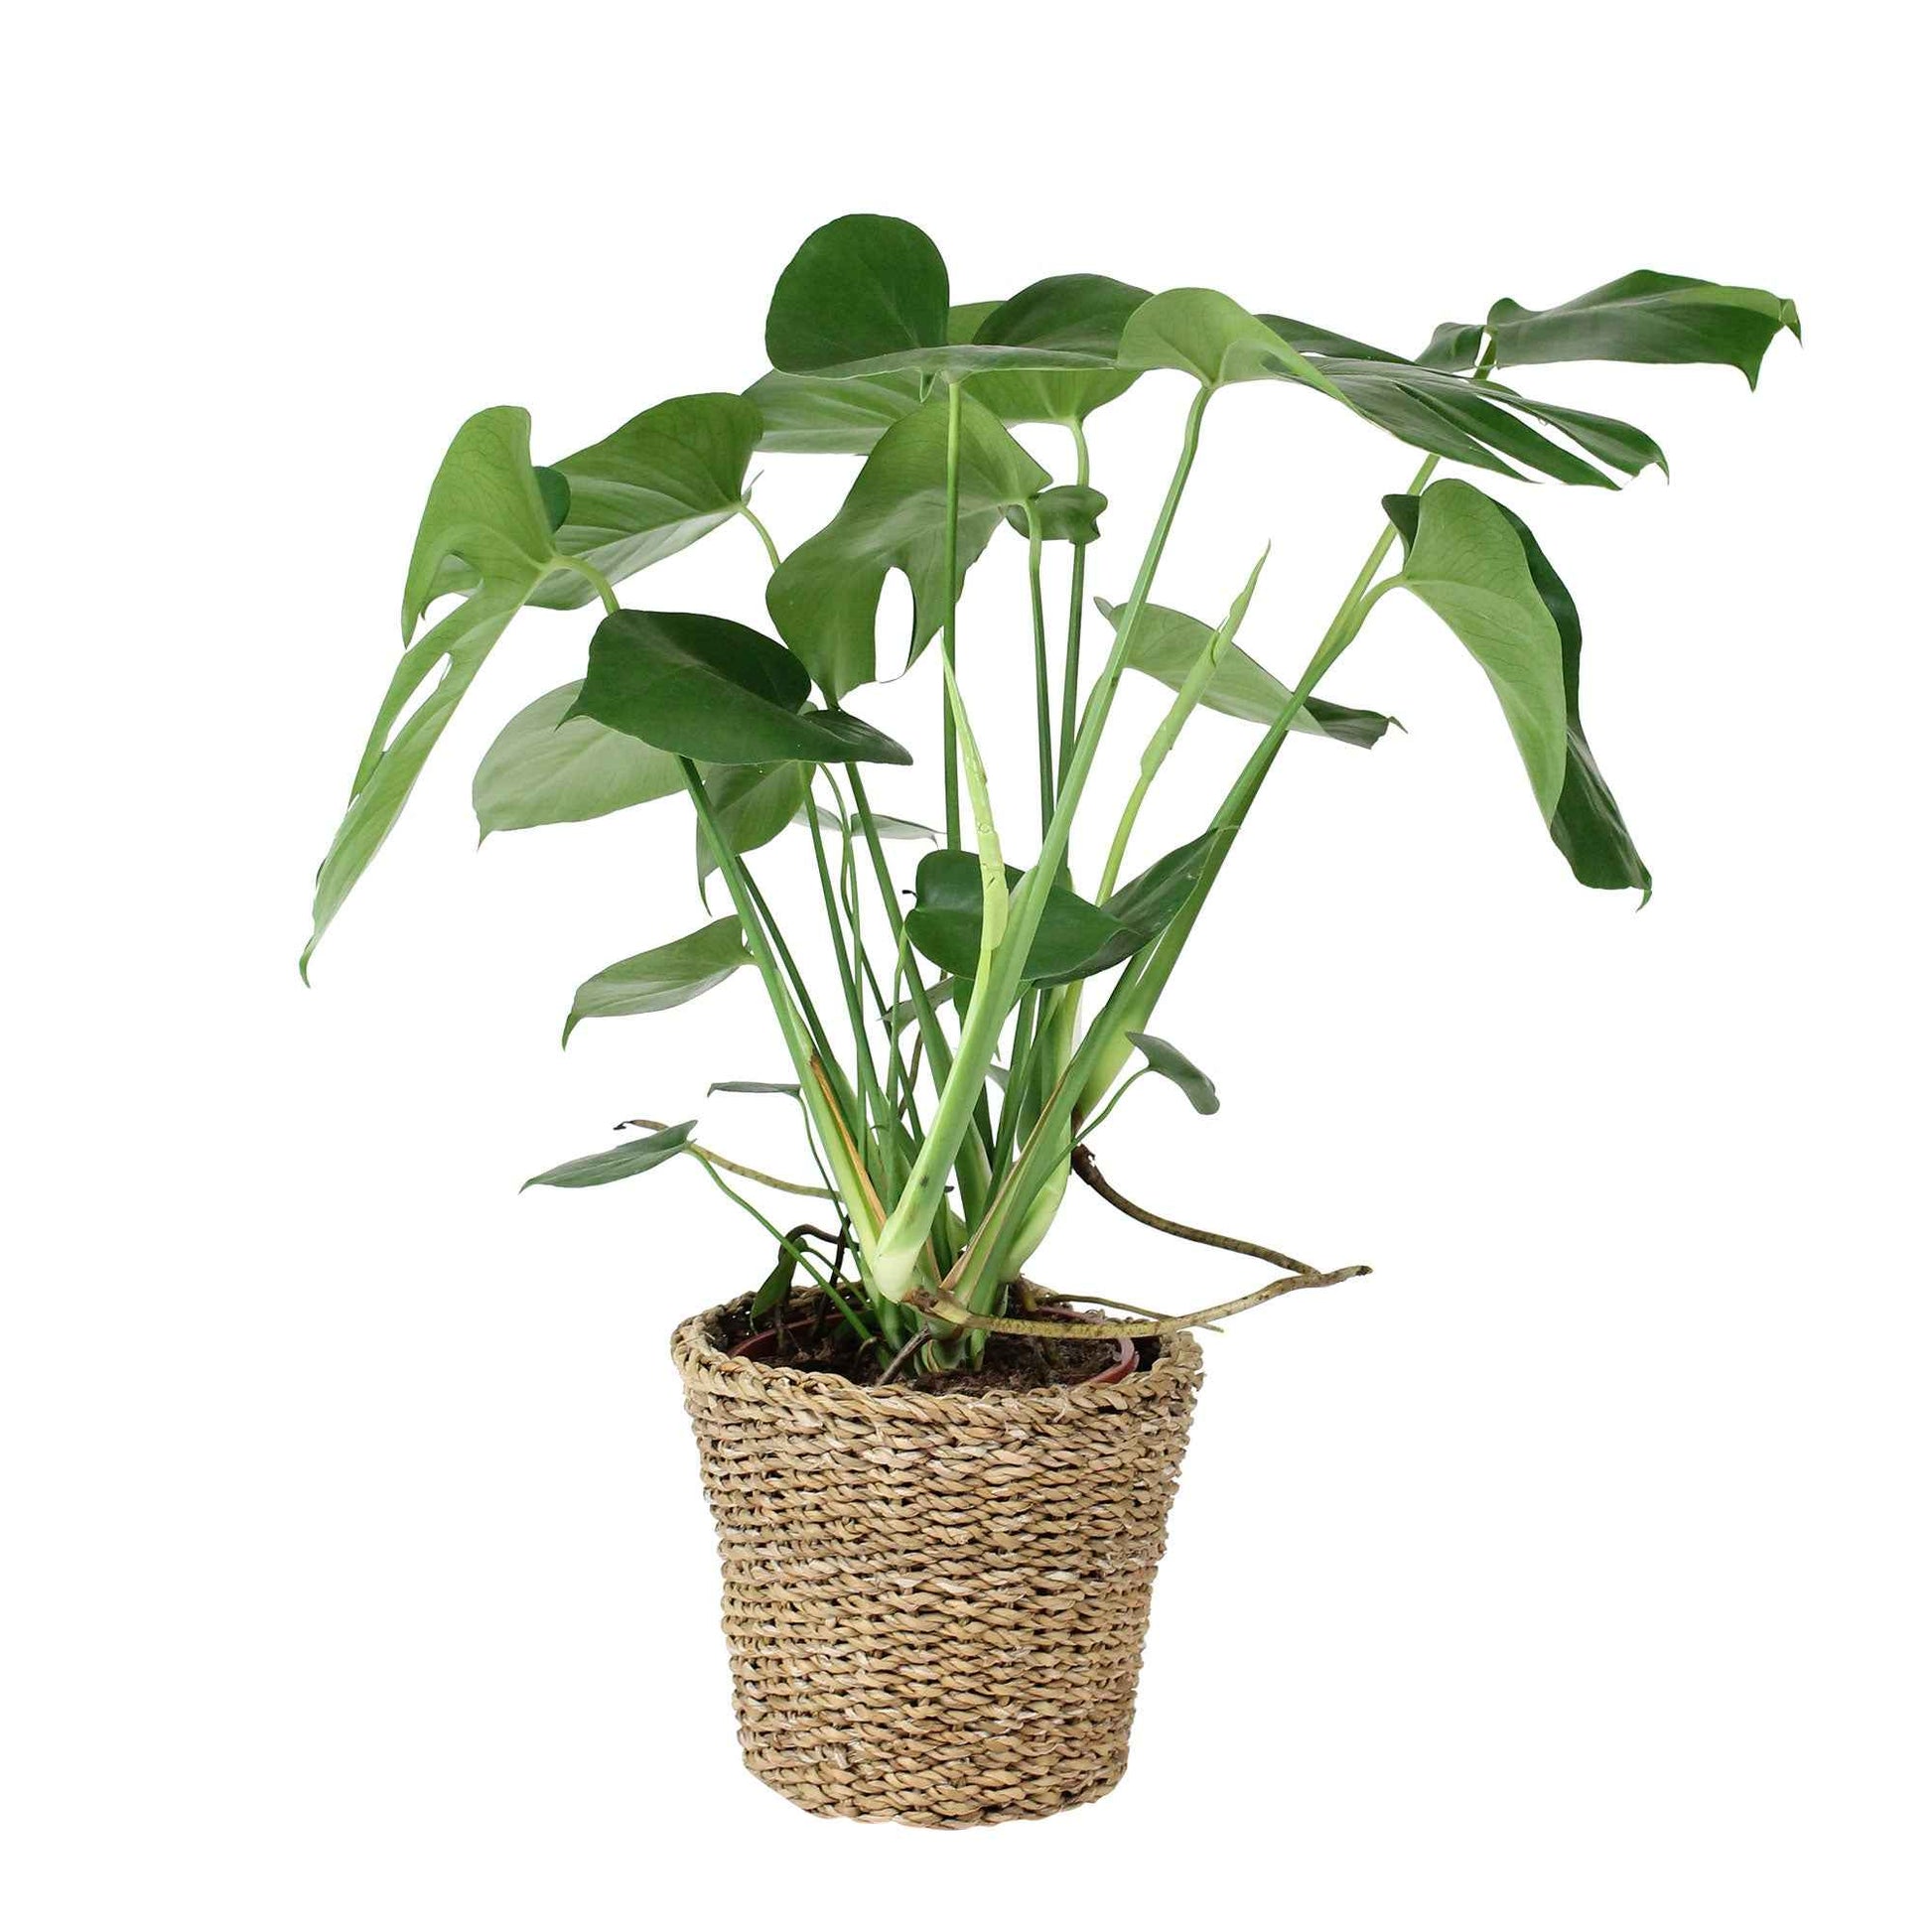 Gatenplant Monstera deliciosa incl. mand - Binnenplant in pot cadeau